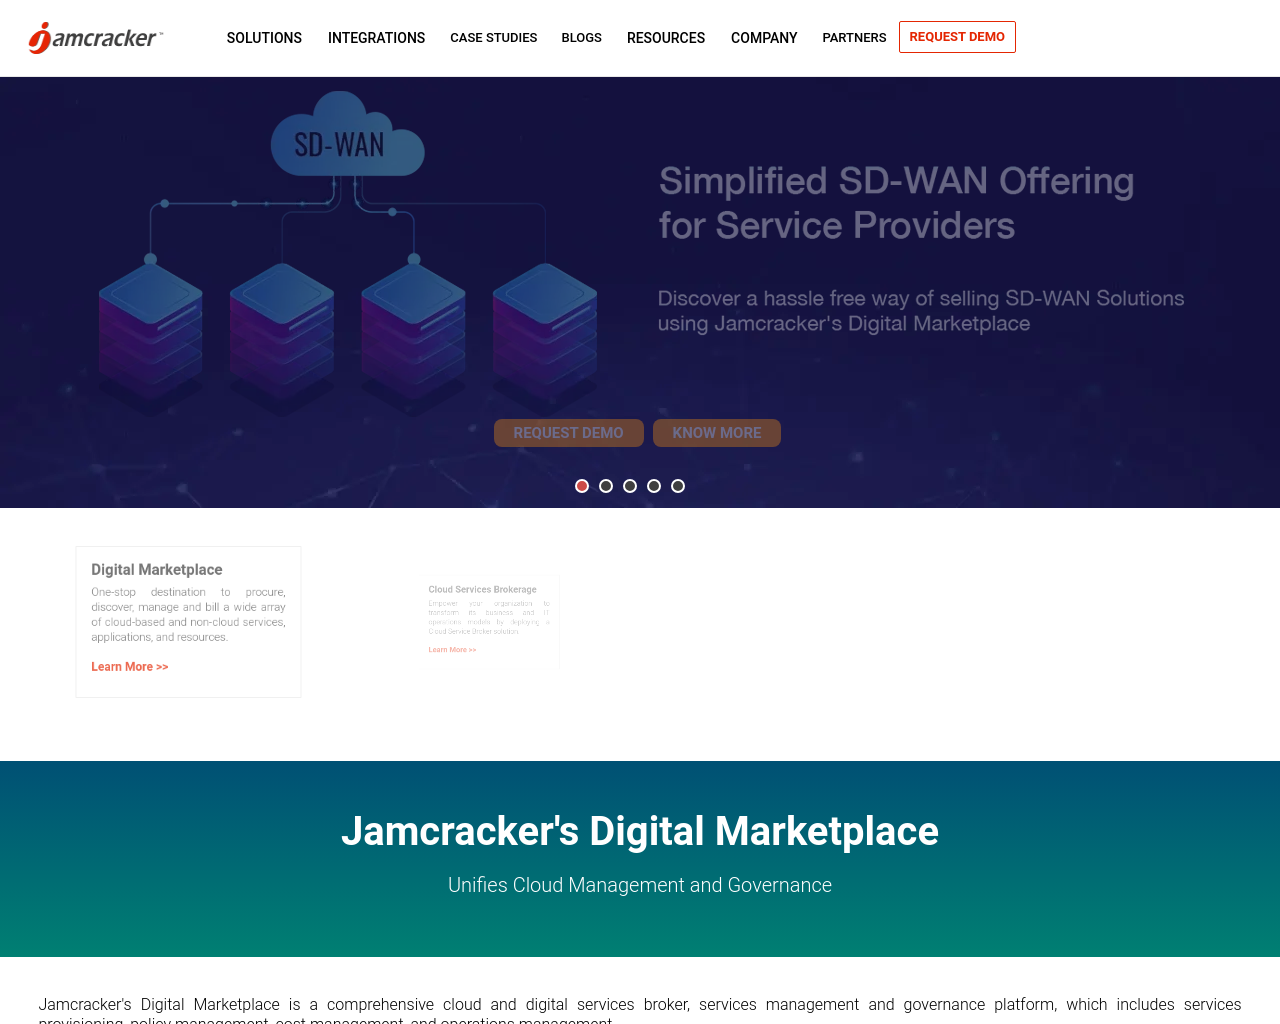 jamcracker.com